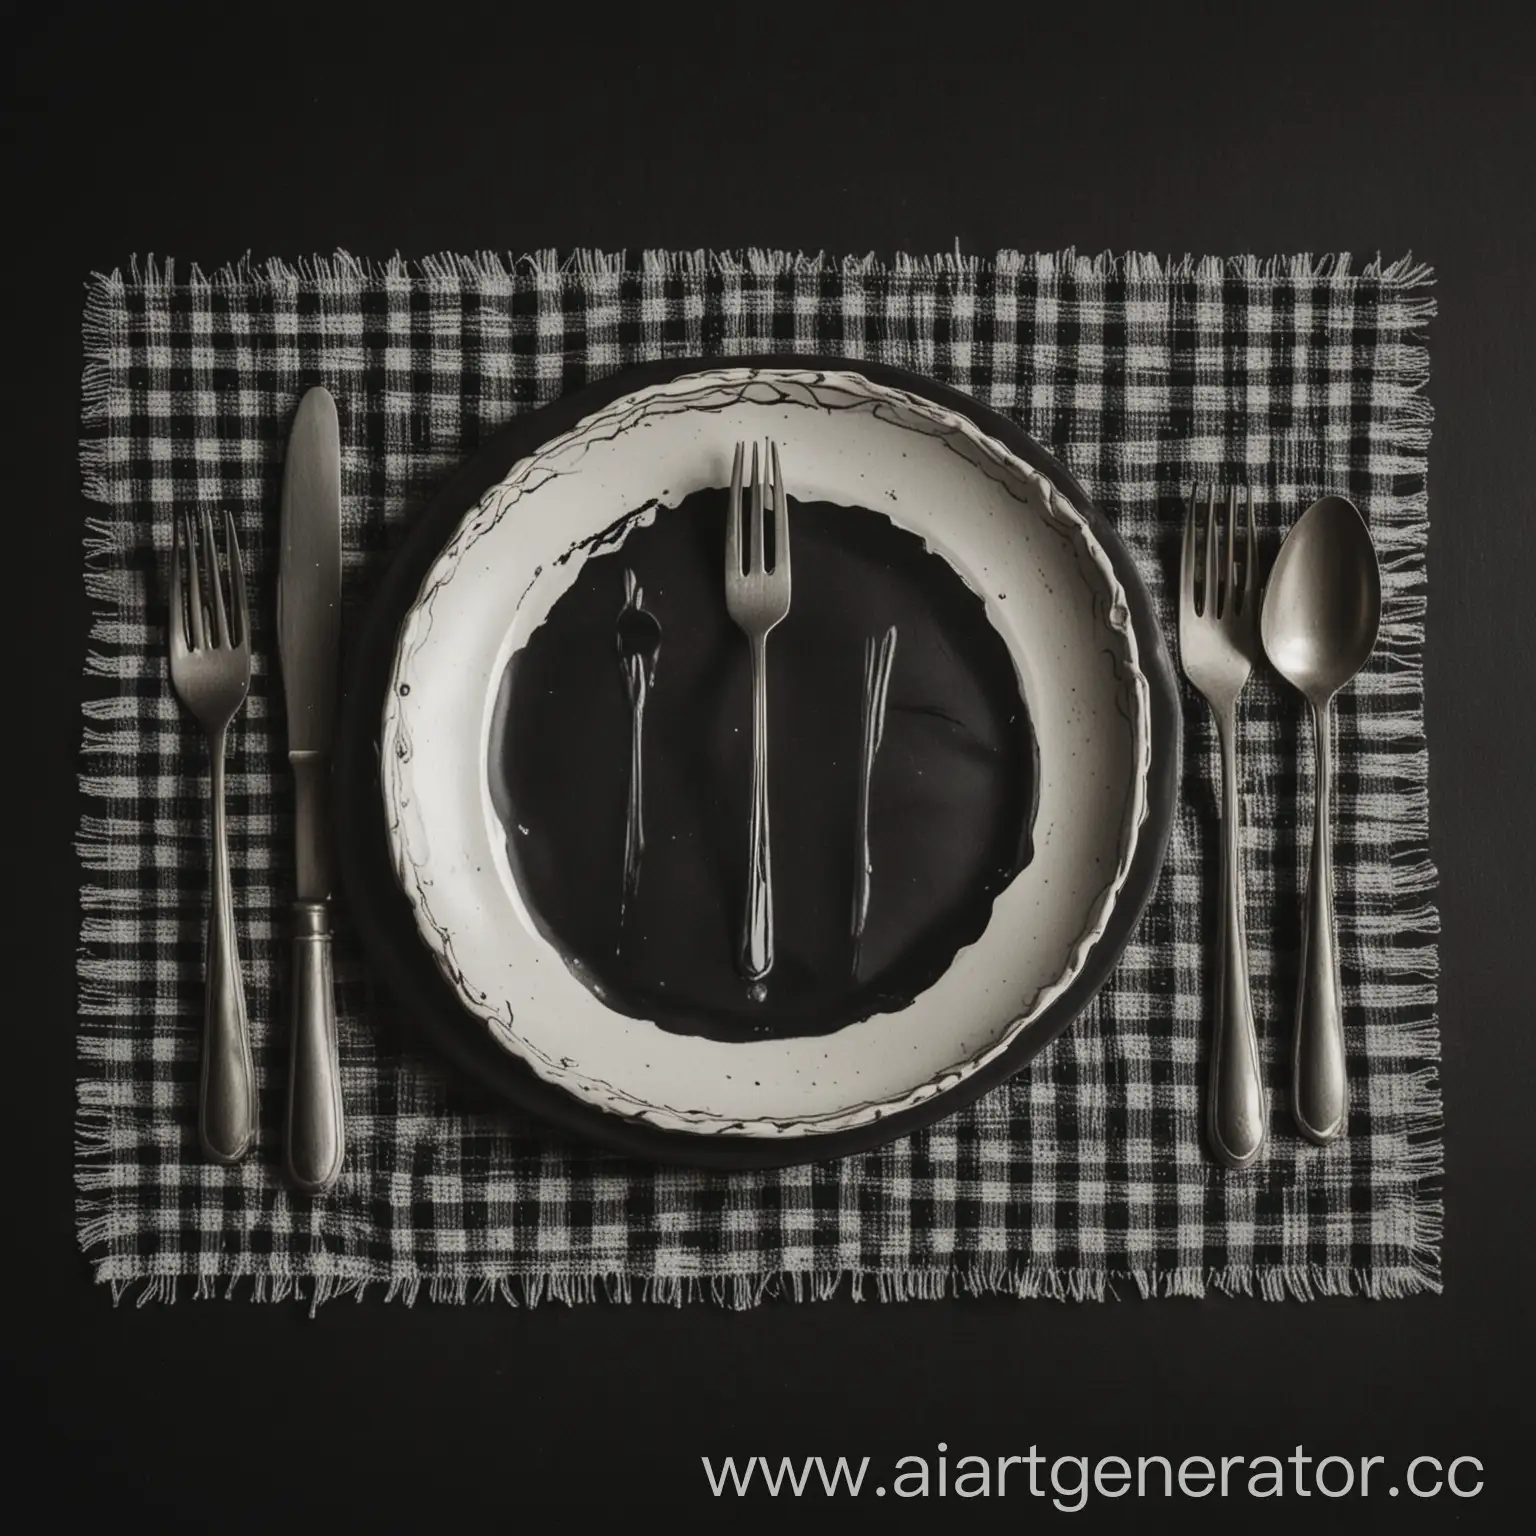 нарисованная сервировка стола. 2 вилки, нож, большая ложка, маленькая ложка, по центру тарелка, на ней скатерть. На черном фоне